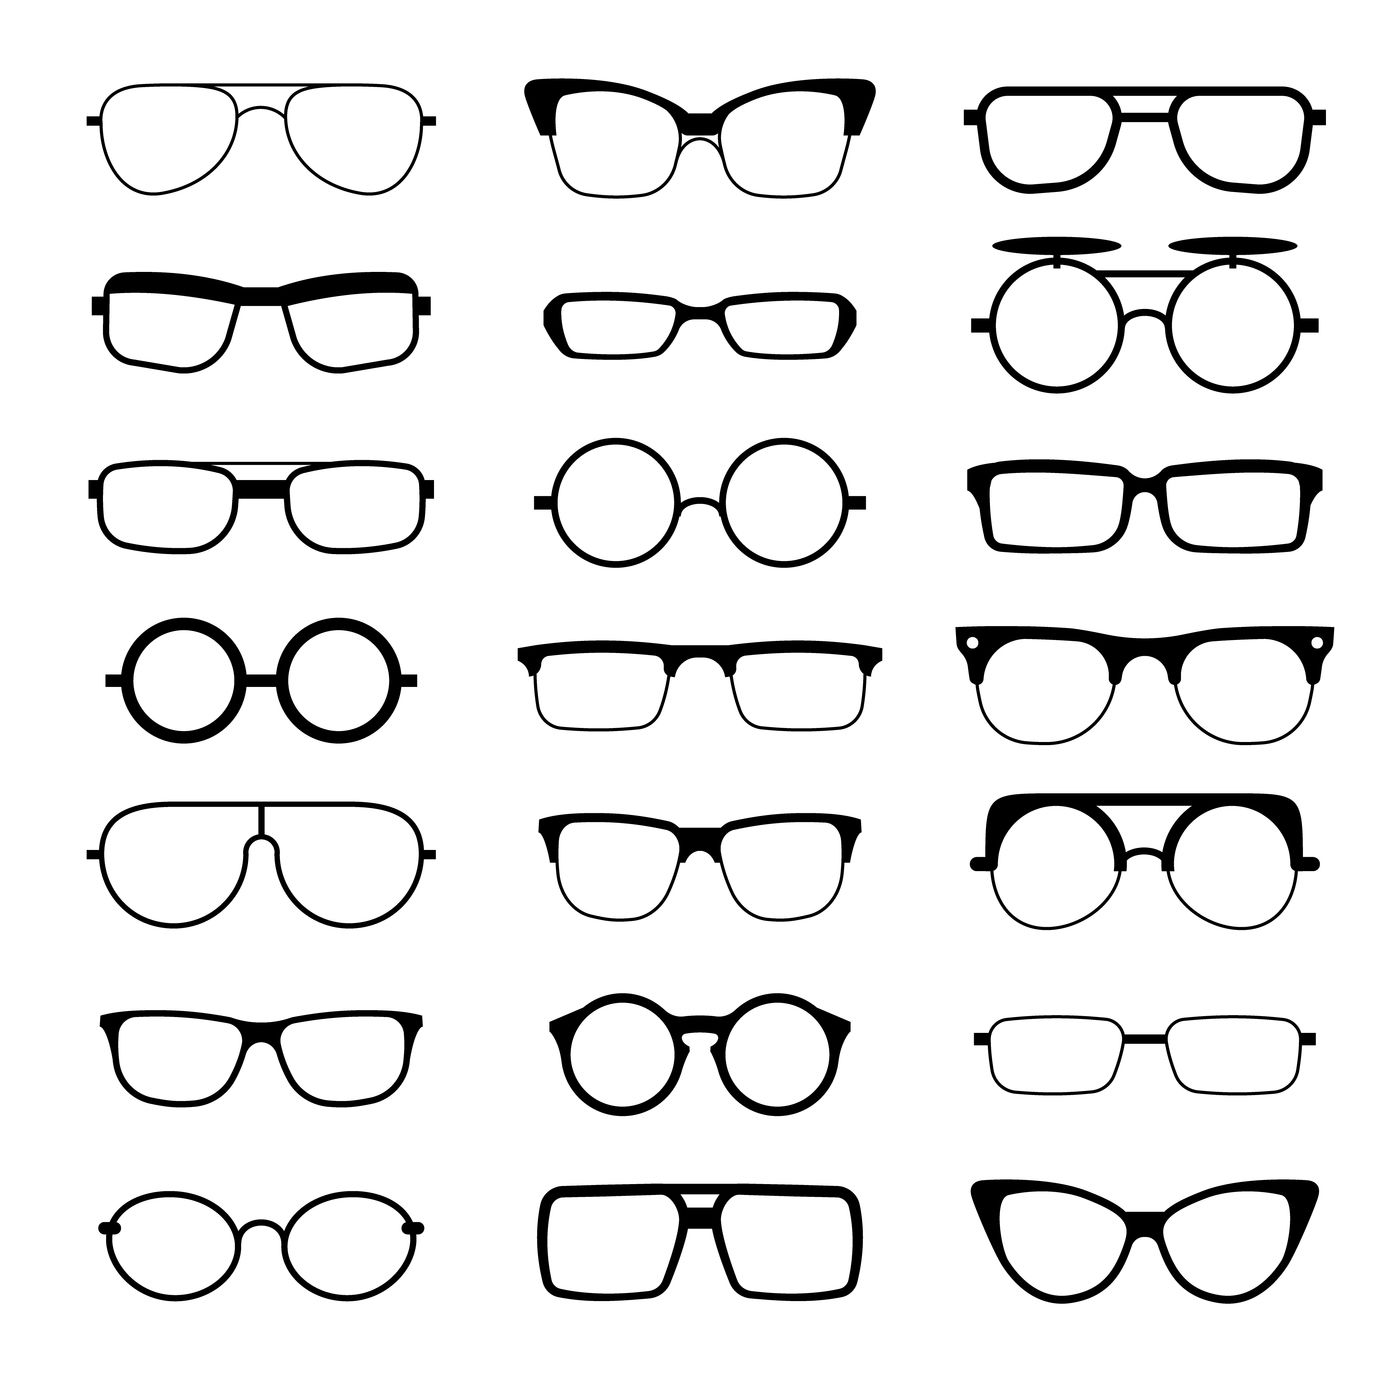 geek glasses